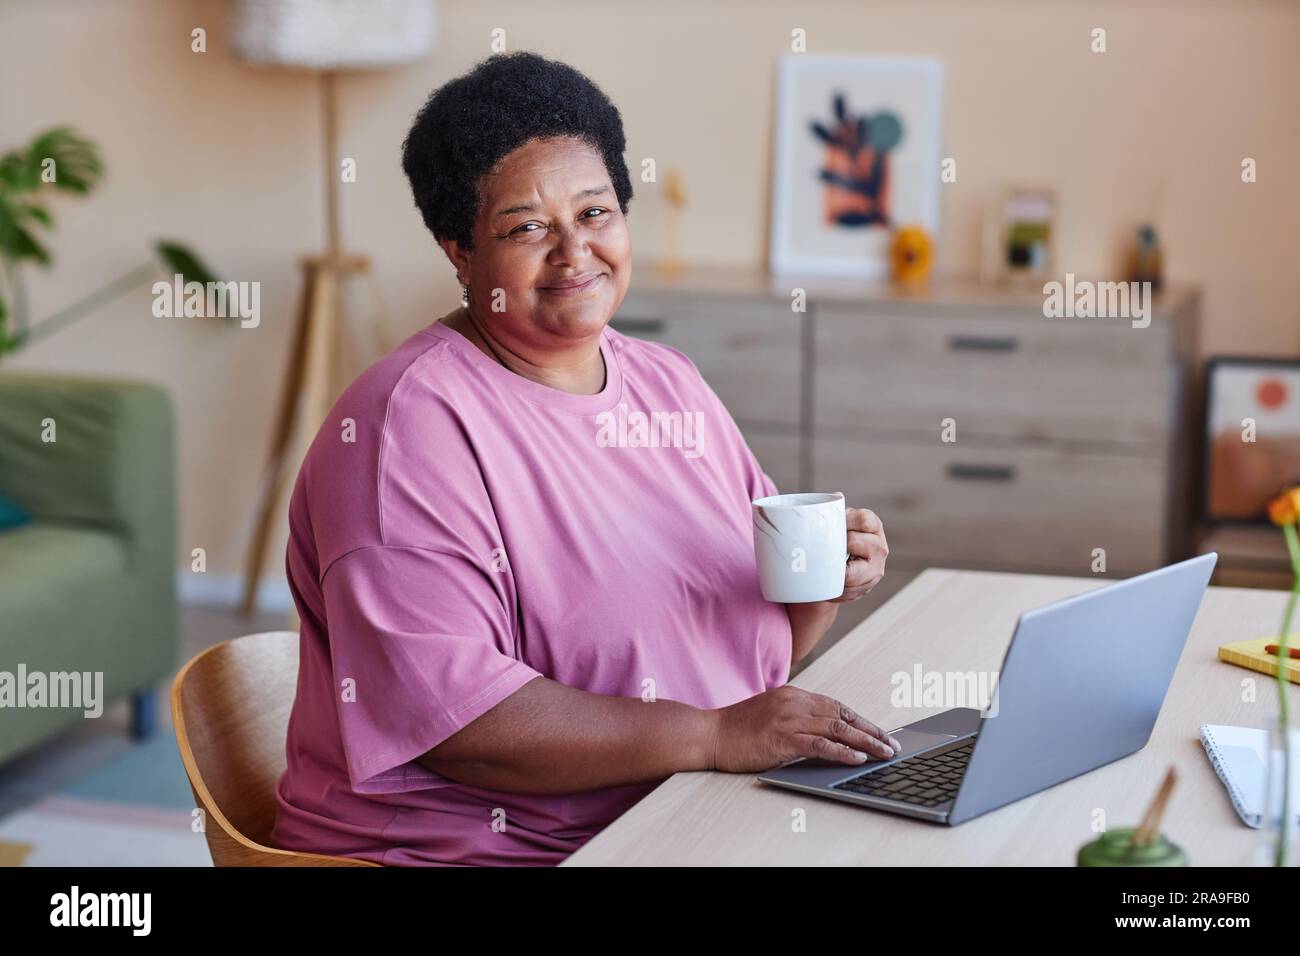 Glückliche Frau mit einer Tasse Tee oder Kaffee, die mit einem Lächeln in die Kamera schaut, während sie vor dem Laptop sitzt und ein Video zum Ansehen auswählt Stockfoto